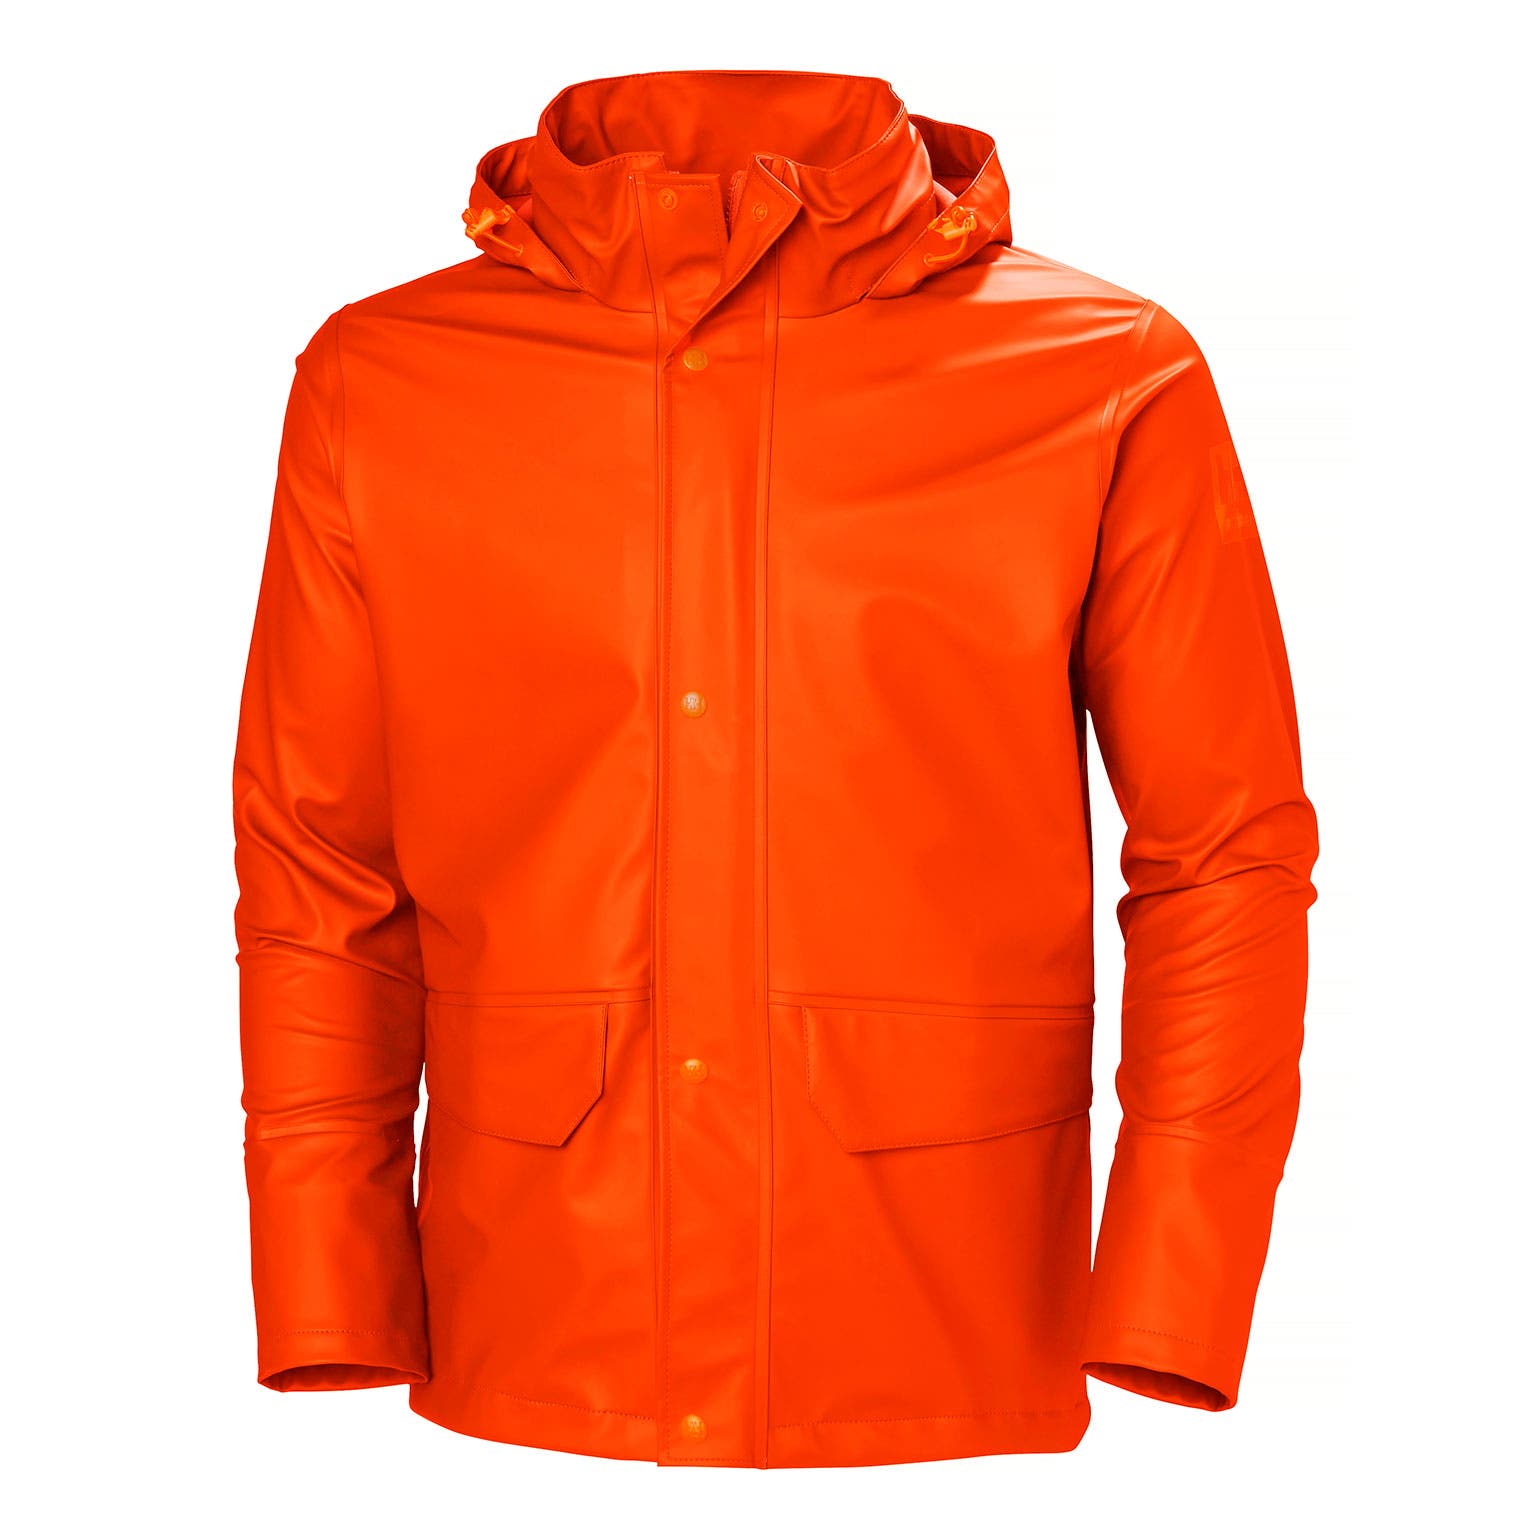 Helly Hansen Men's Gale Rain Jacket in Dark Orange from the front